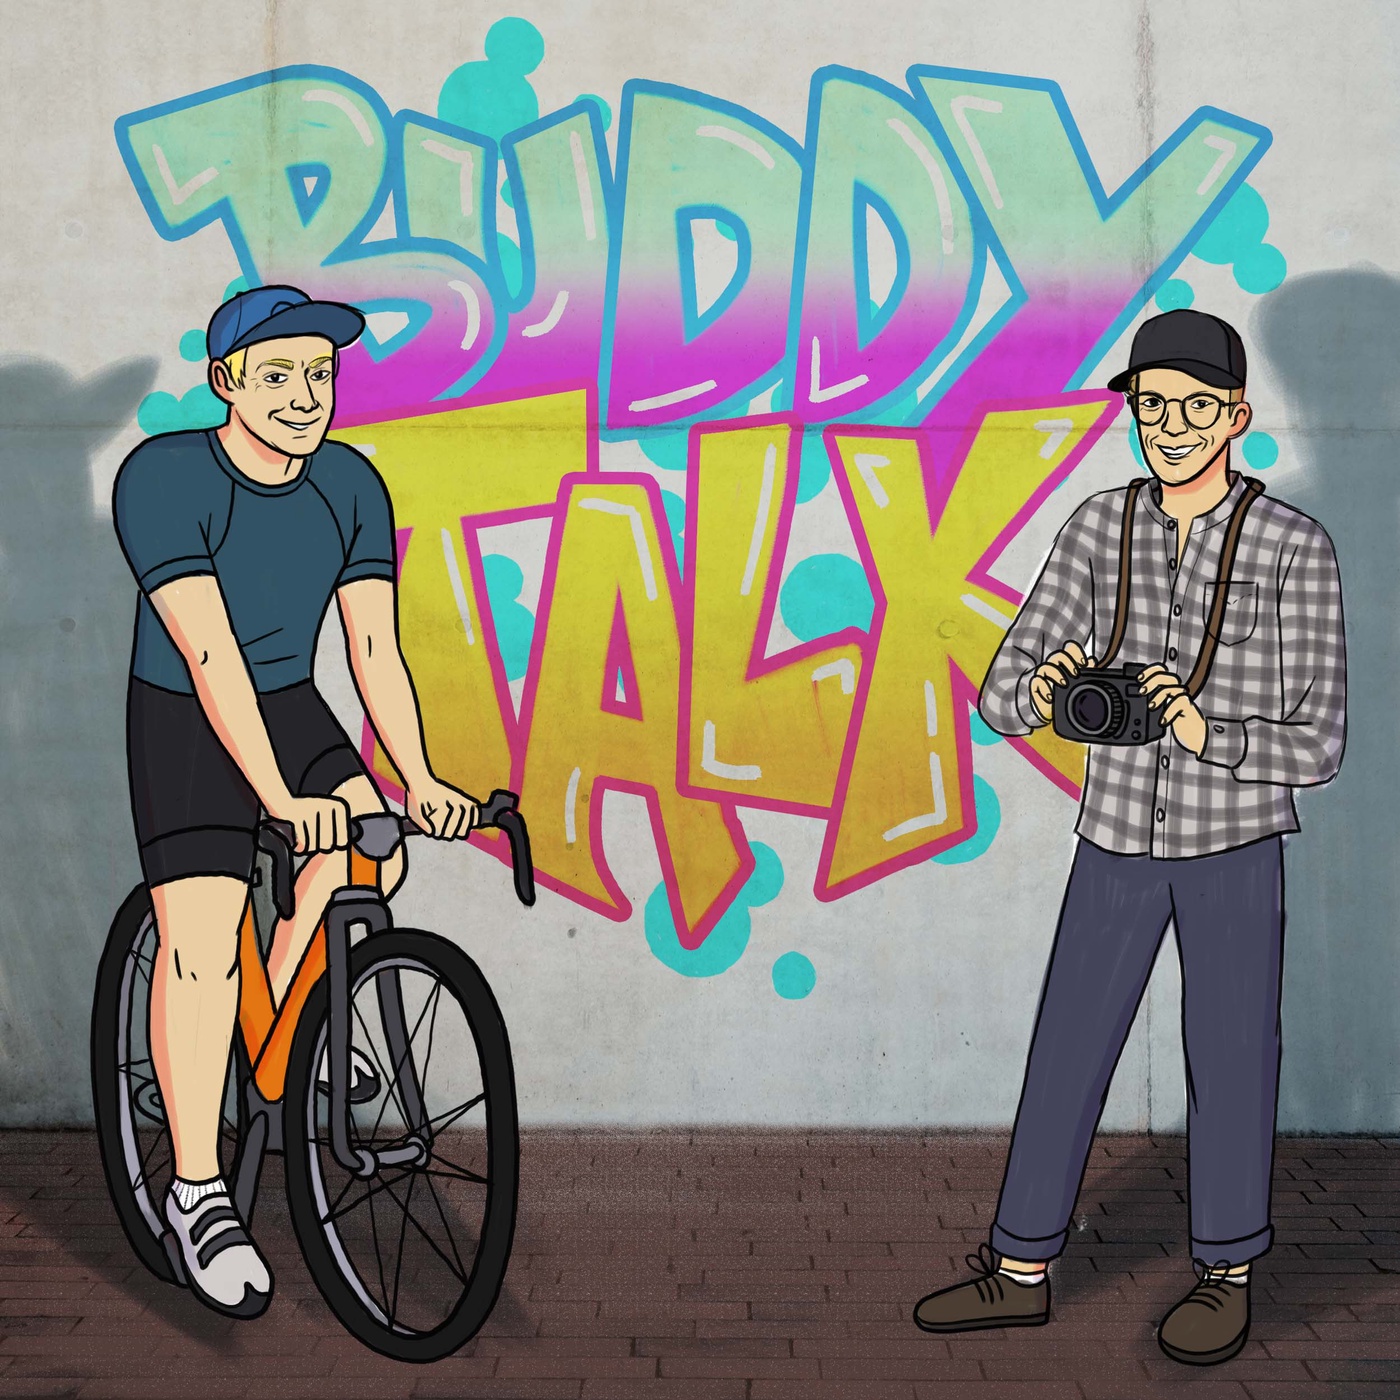 Buddy Talk